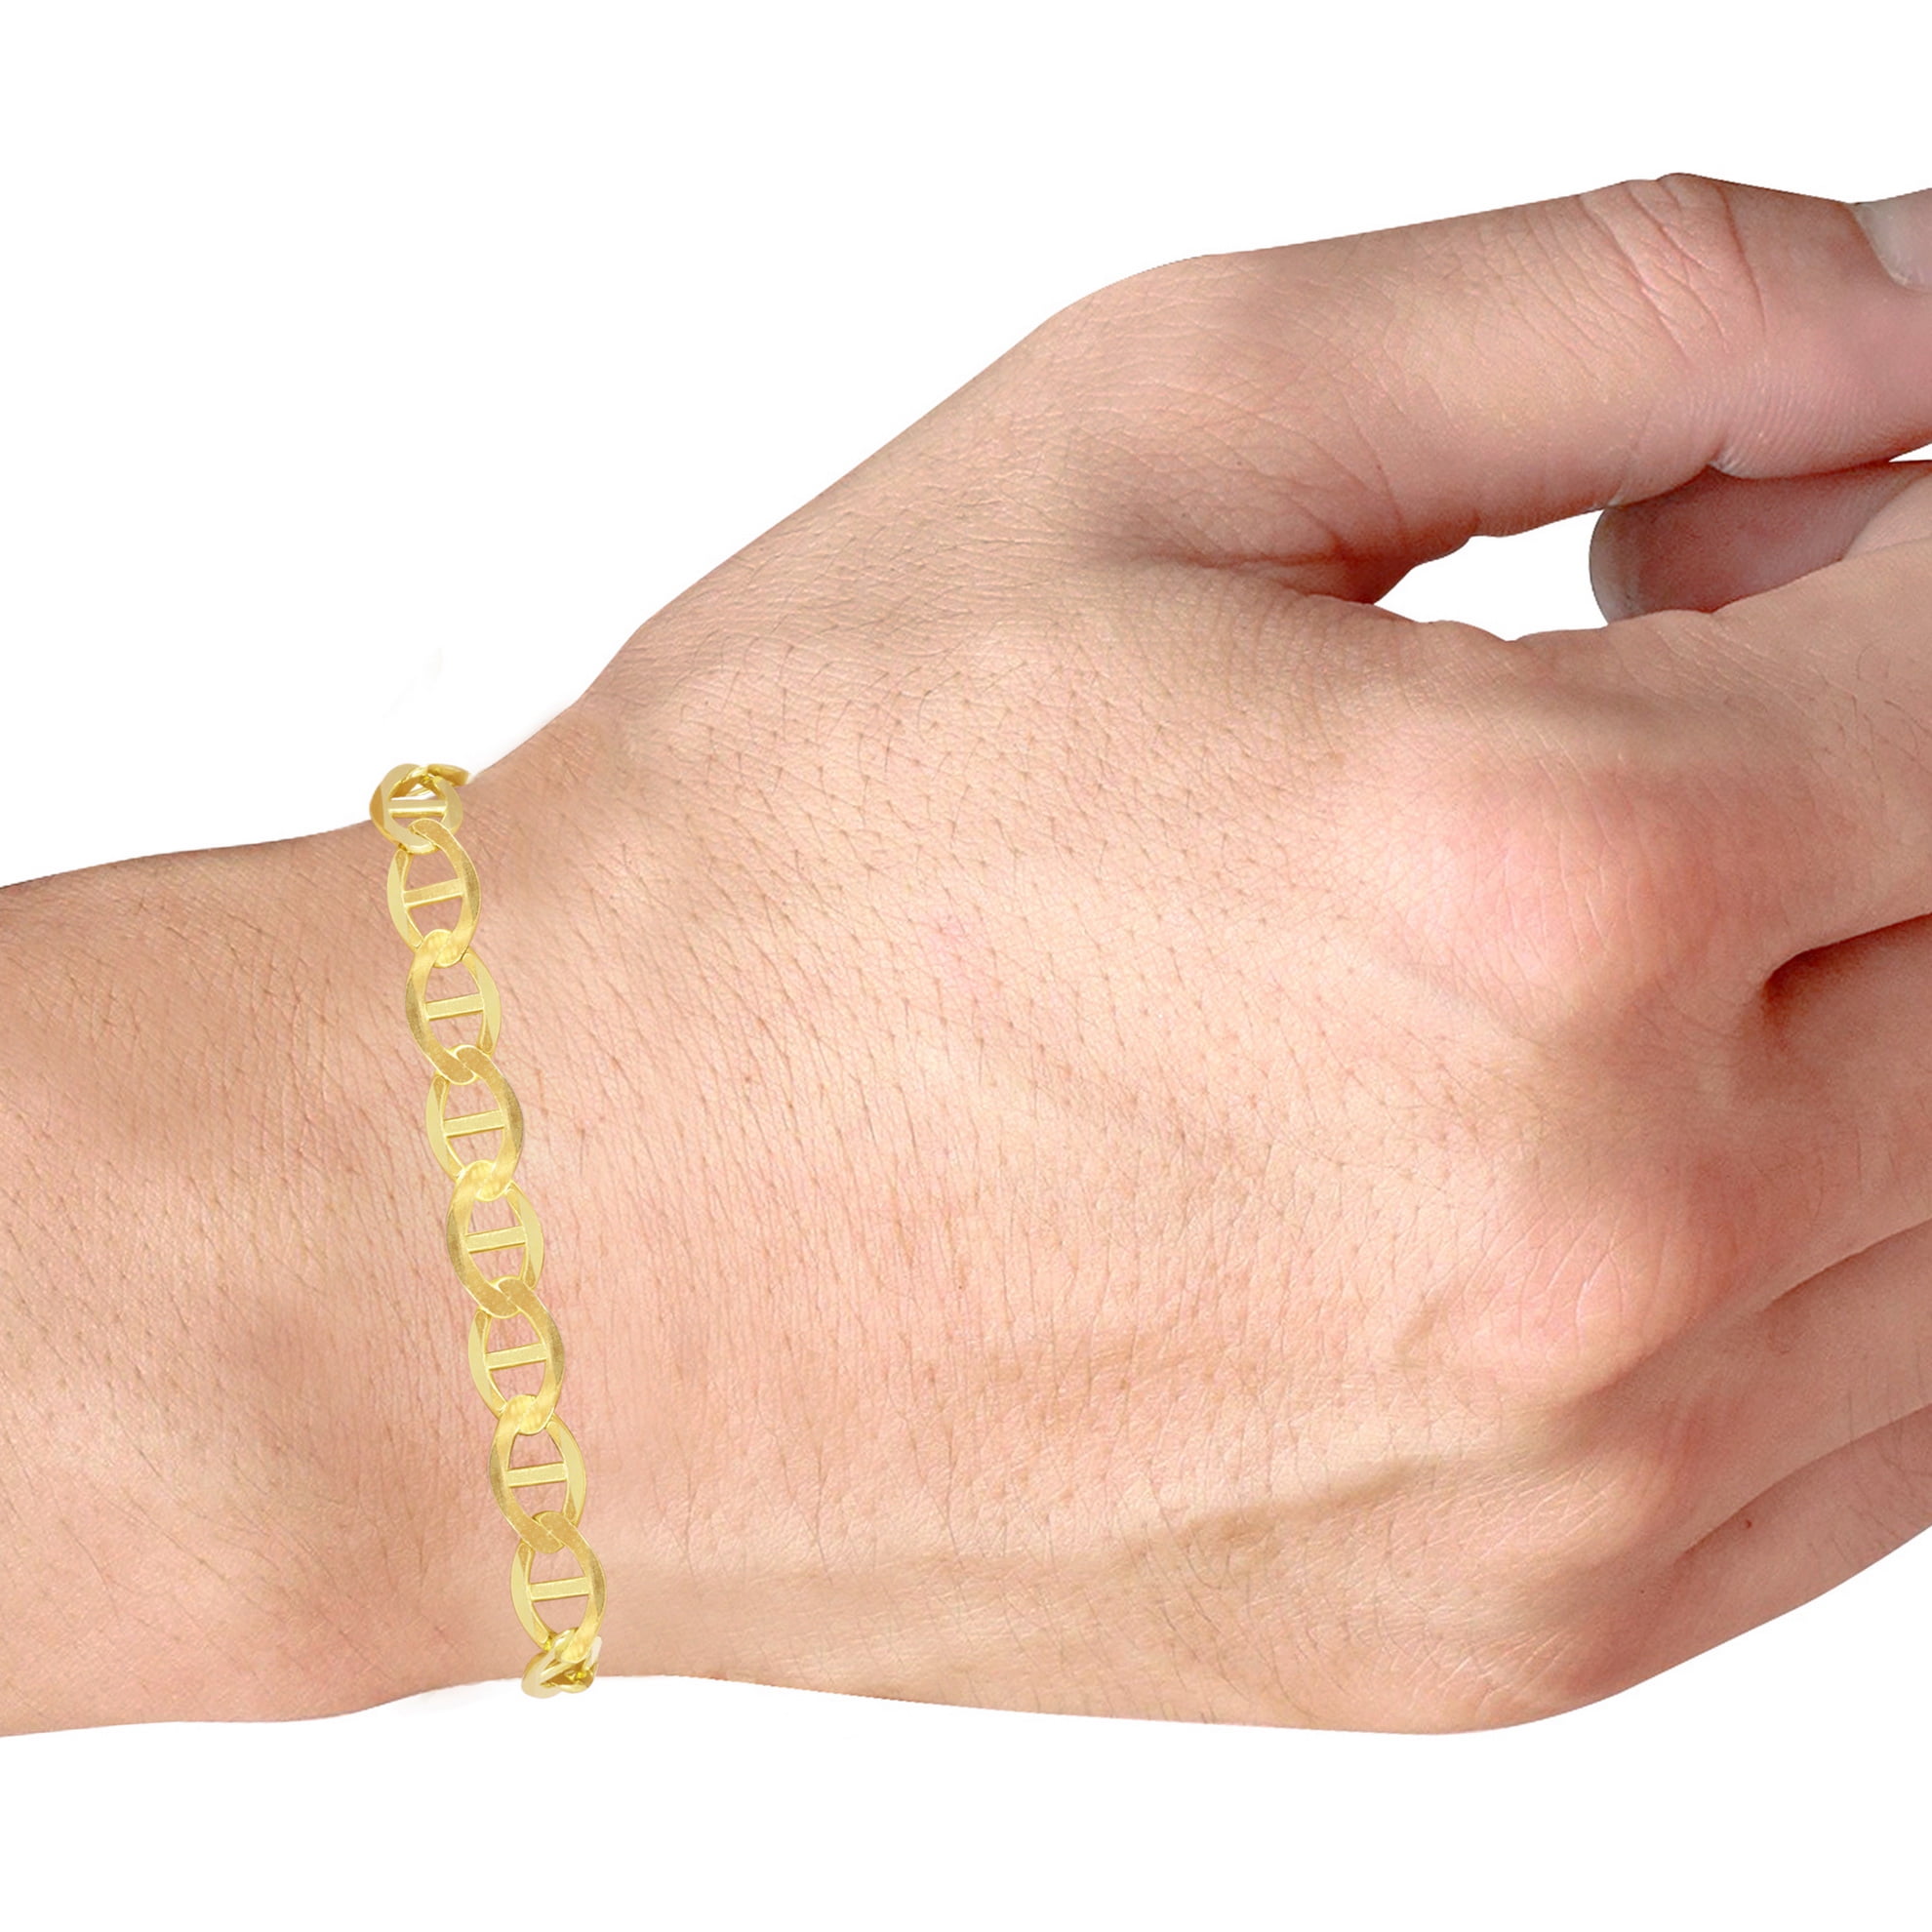 Cable Cuff Bracelet - 14k Bracelet- Nautical gold bracelets - Sailor Cable  Bracelet for men 18K 